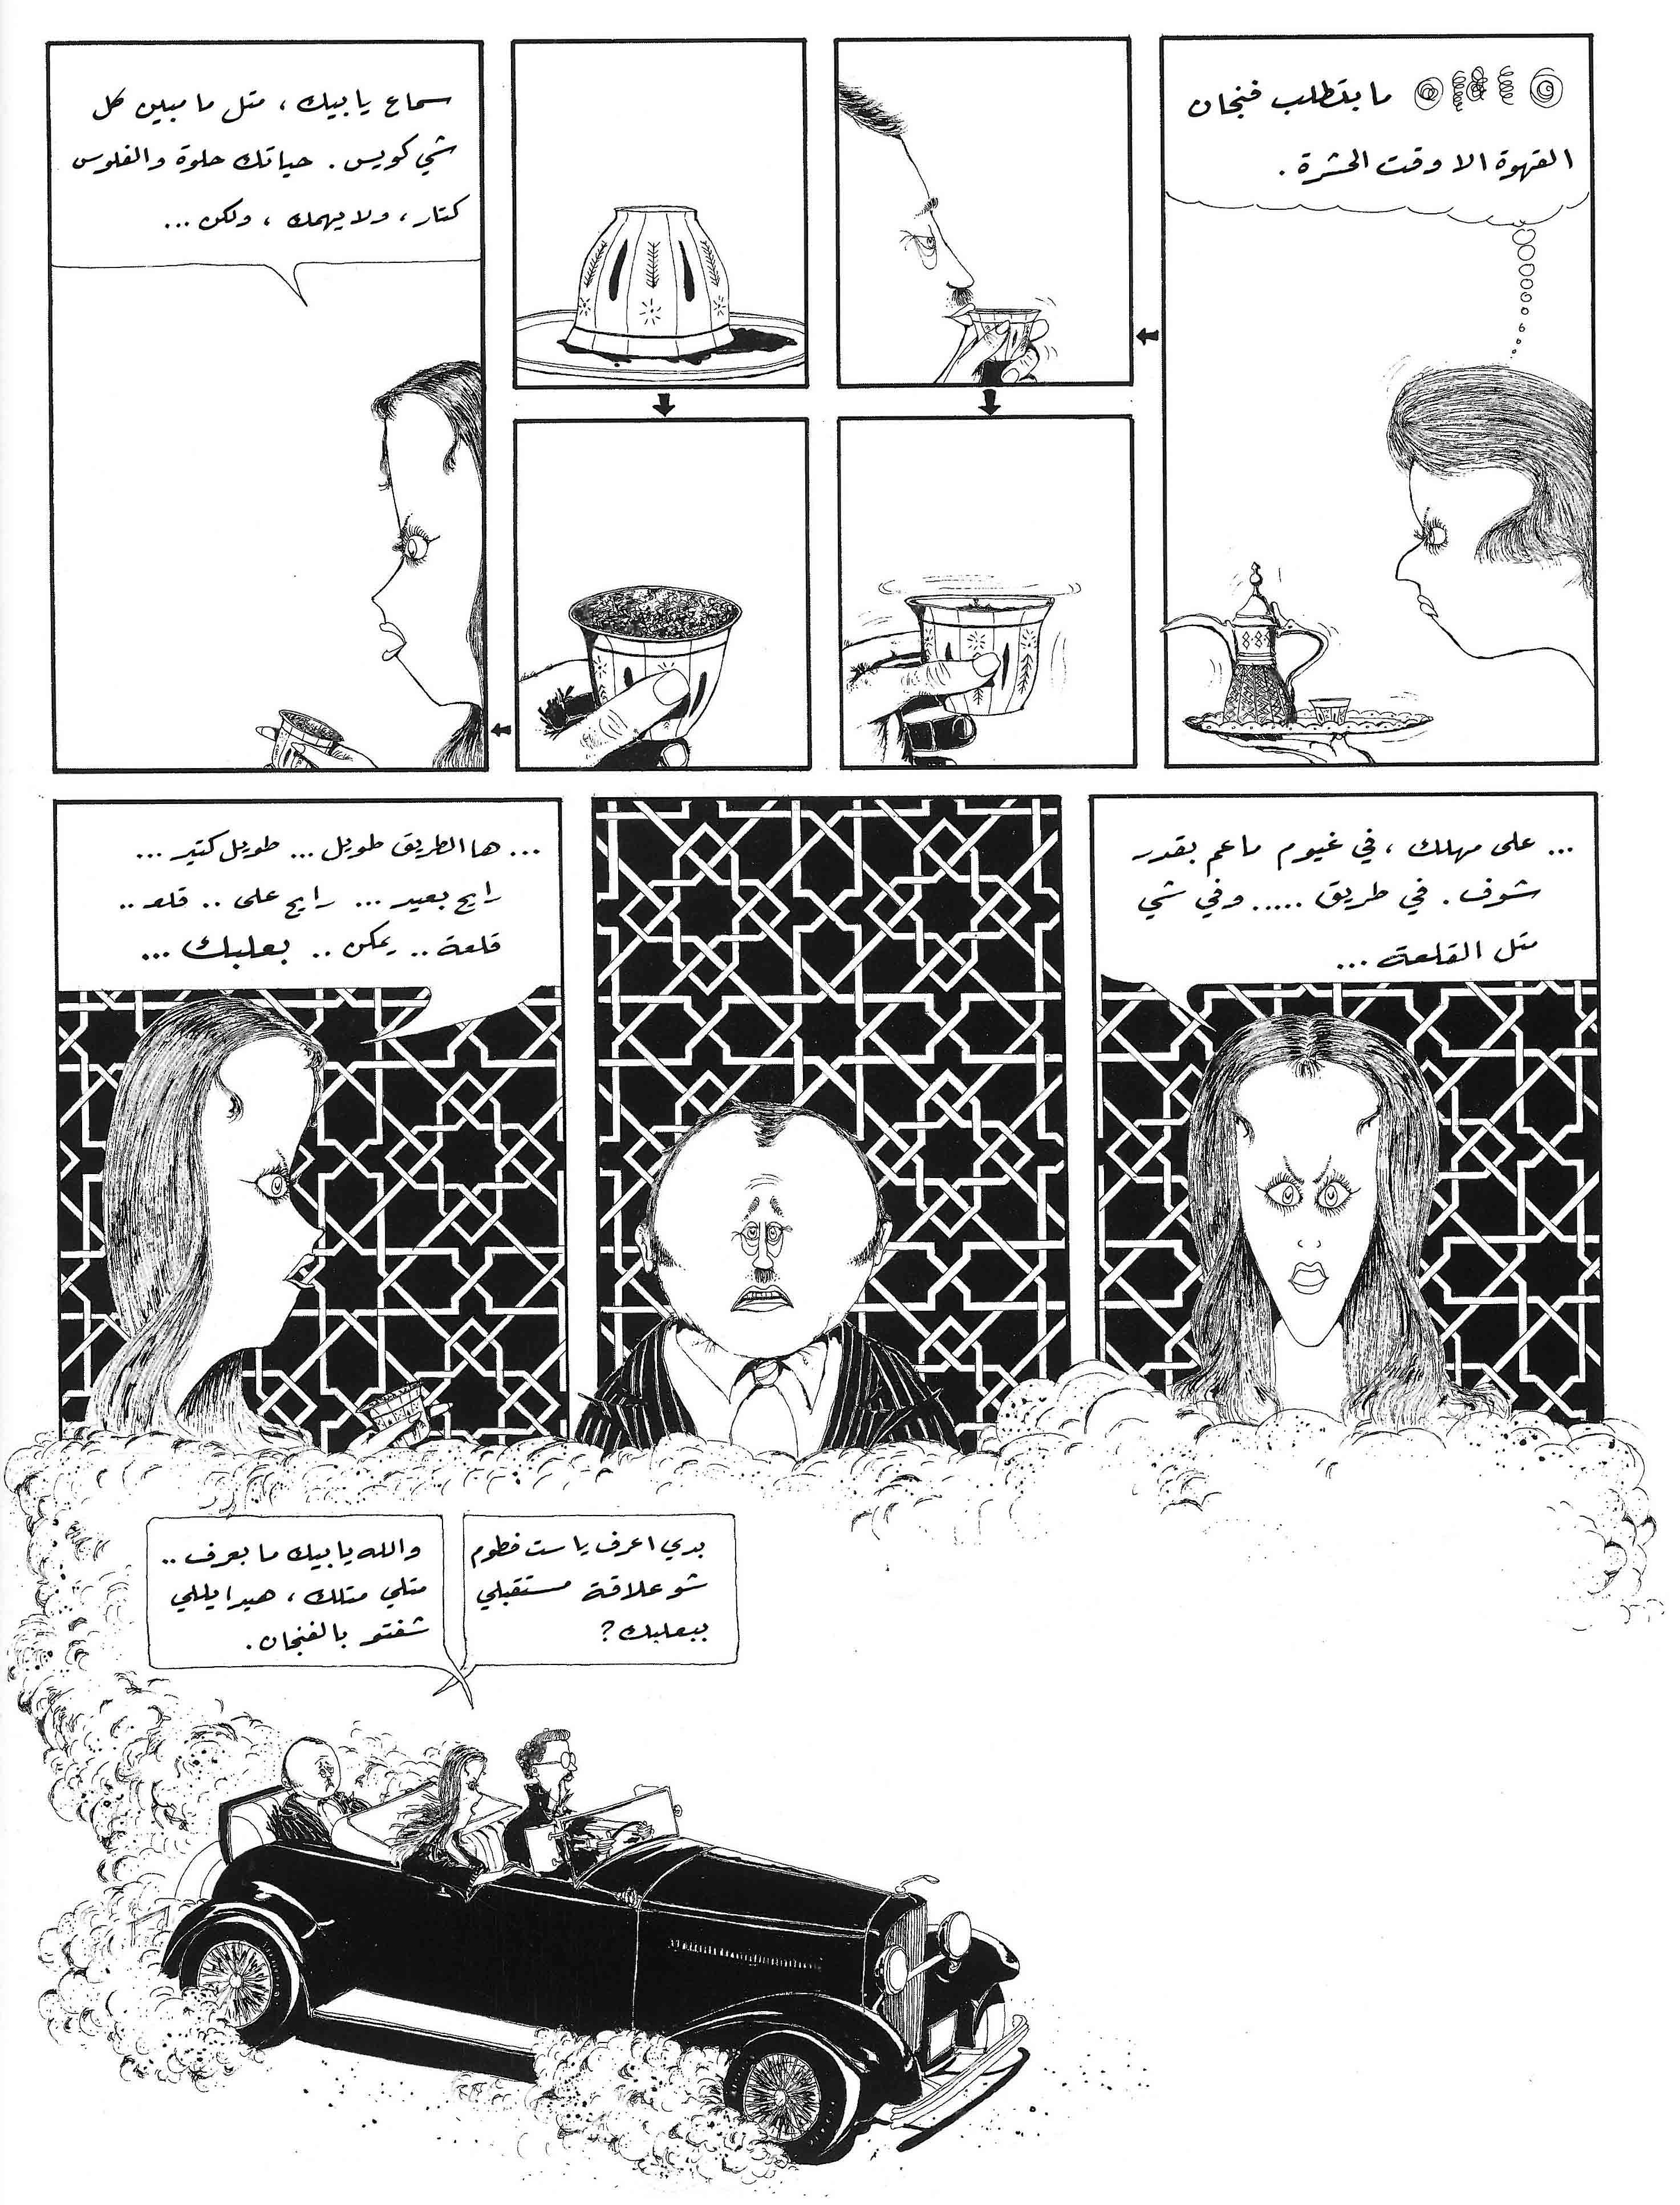 works_on_comics_in_Lebanon-4.jpg